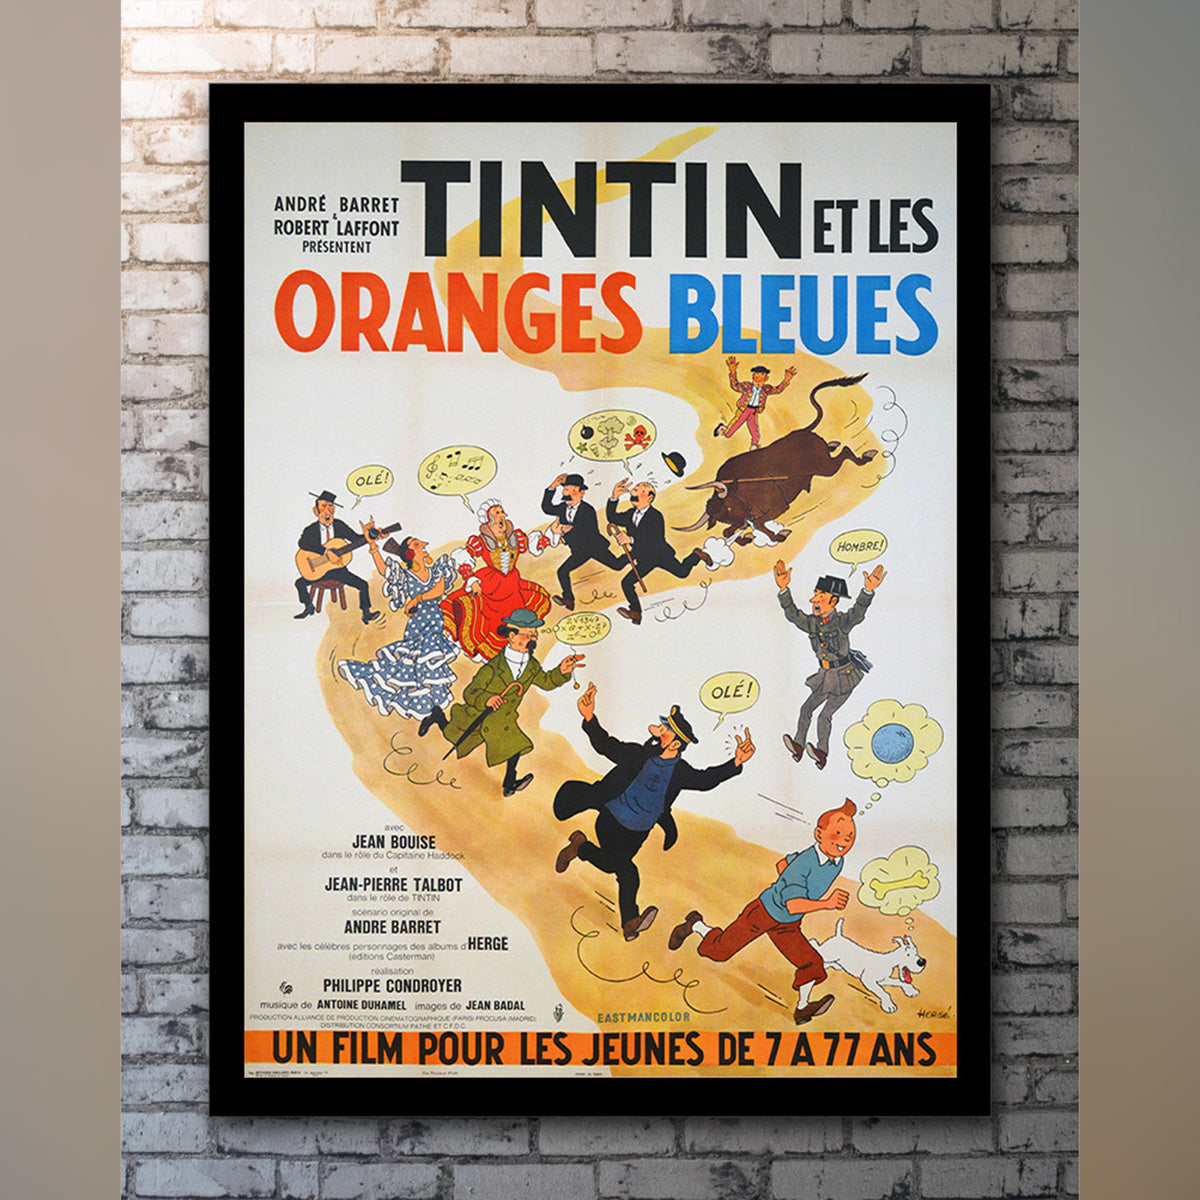 Original Movie Poster of Tintin Et Les Oranges Bleues (1964)